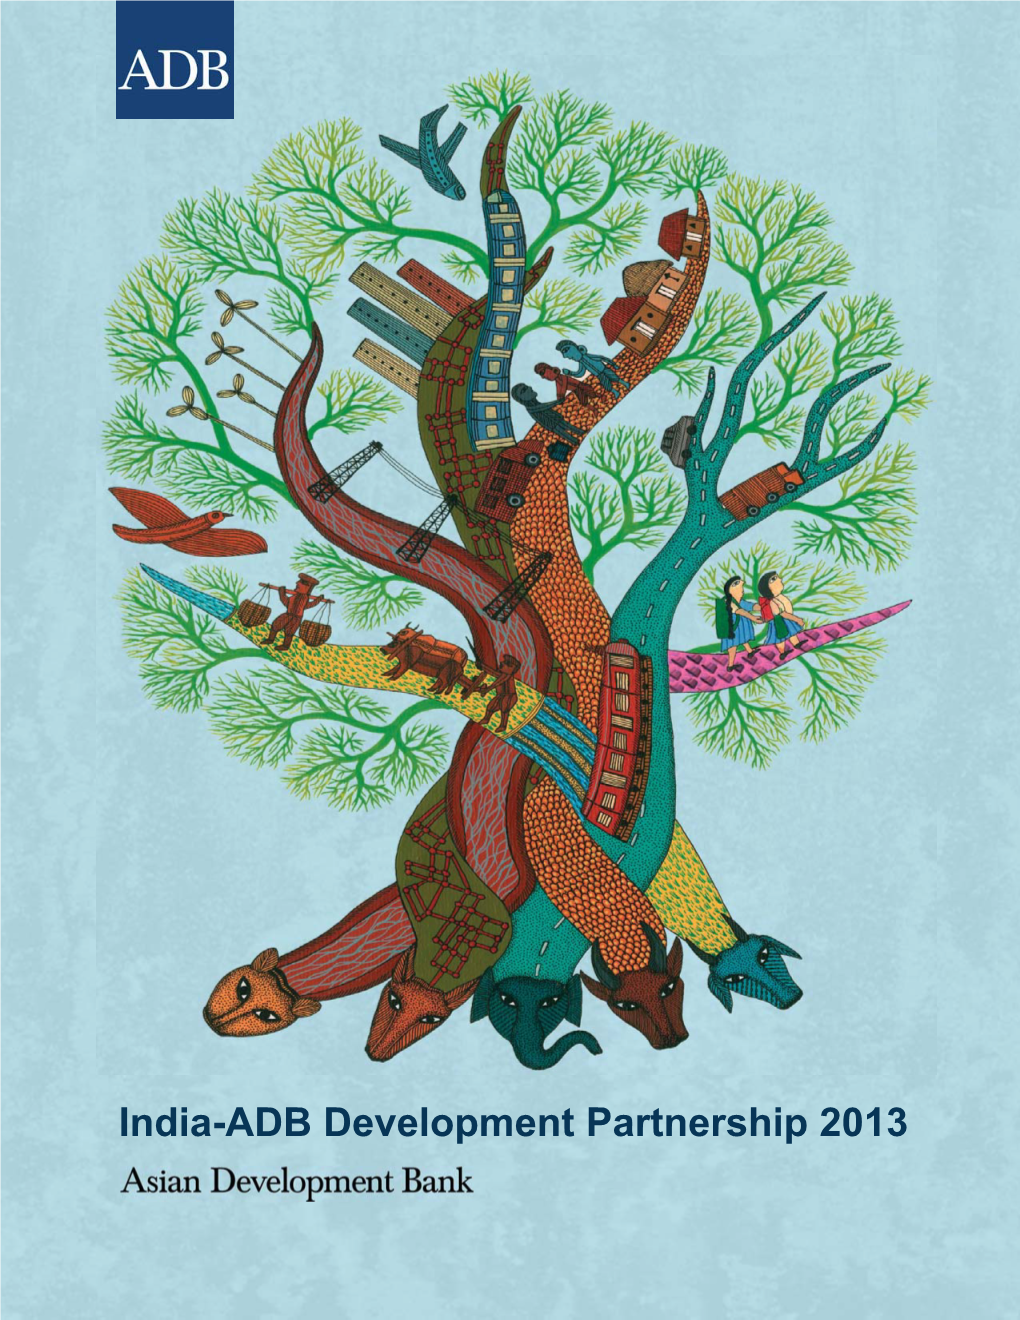 India-ADB Development Partnership 2013 India-ADB Development Partnership 2013 © 2013 Asian Development Bank